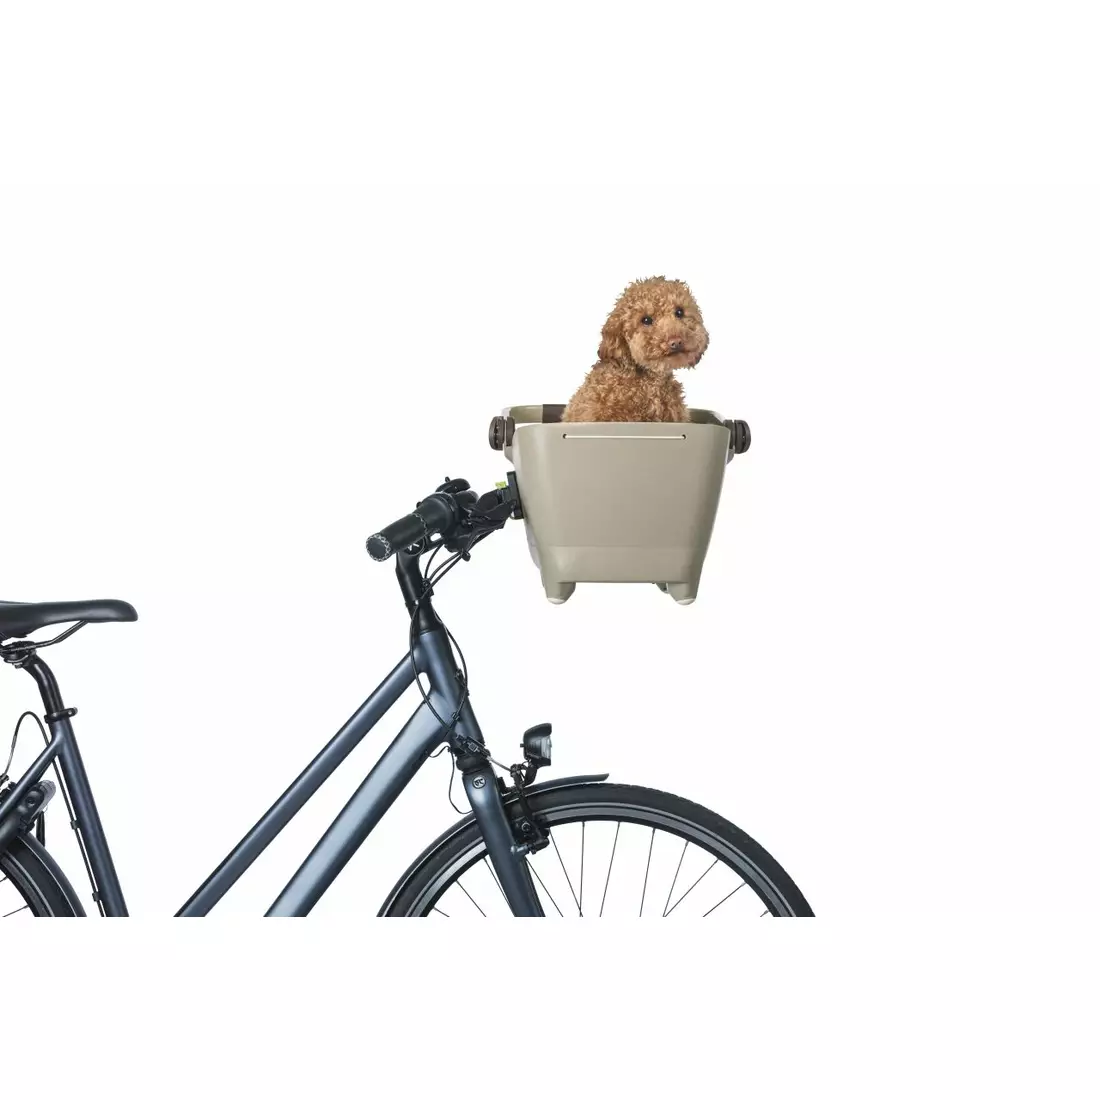 BASIL BUDDY KF přední košík na kolo pro psa s polštářkem, hnědá